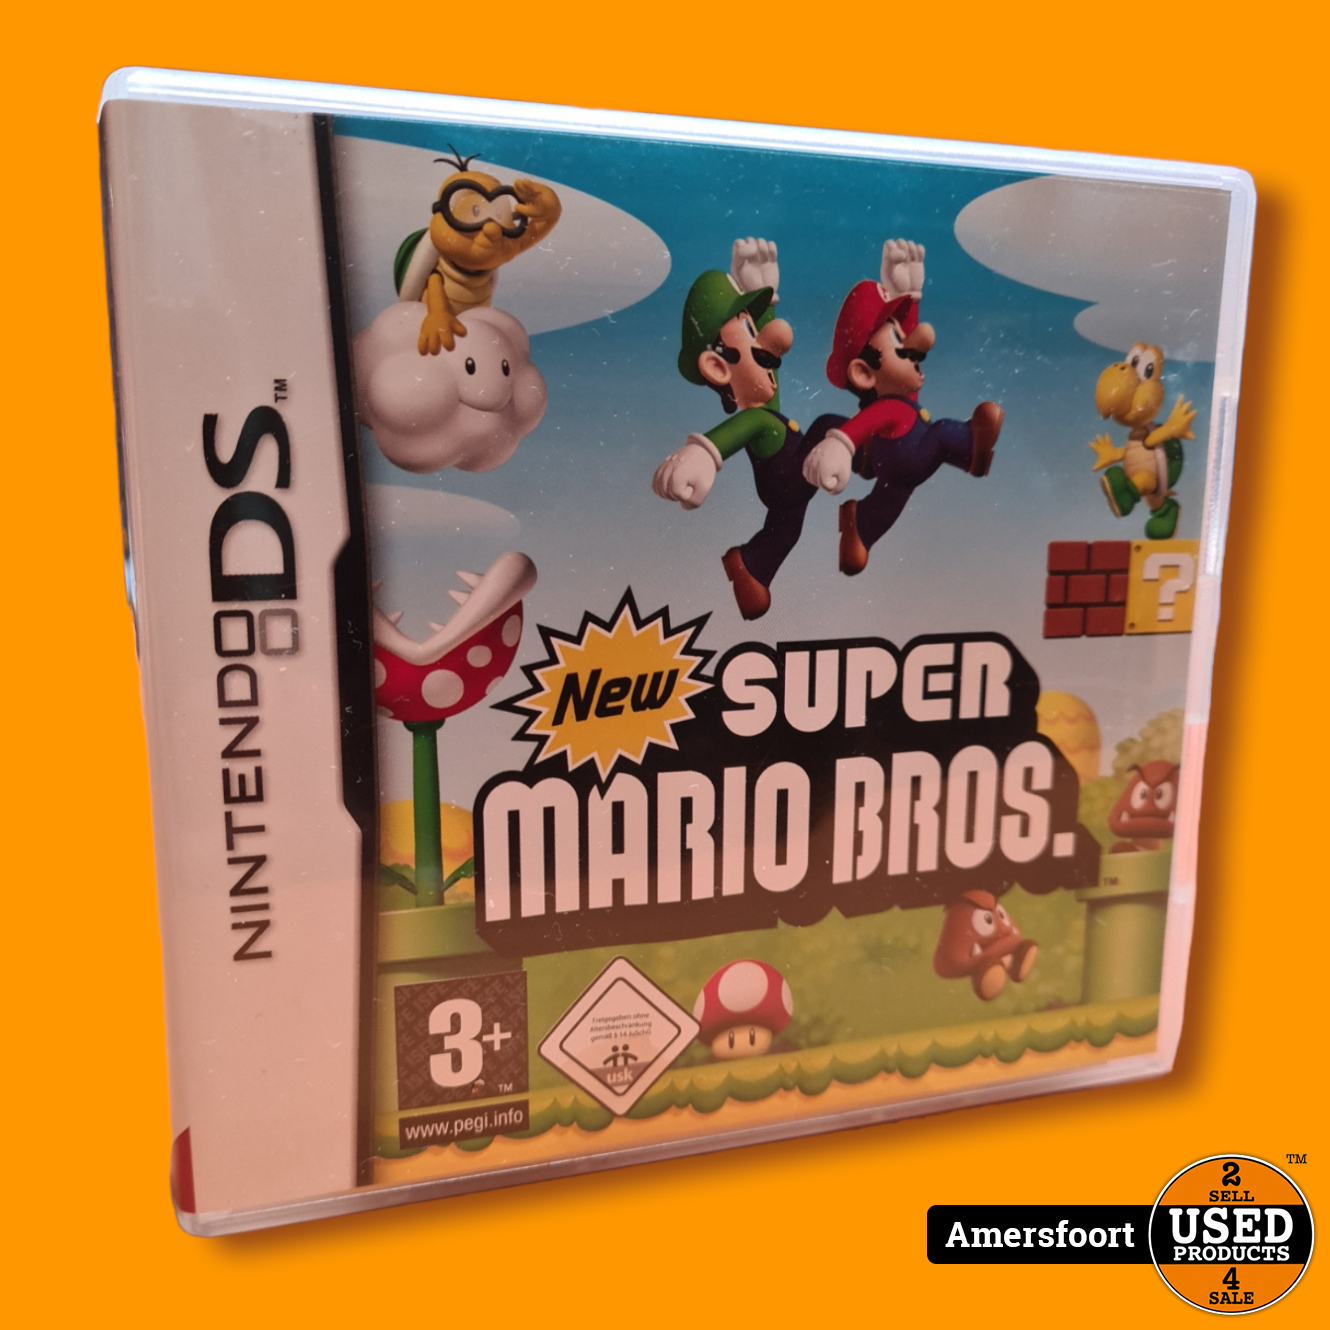 Uittreksel fles Roos NDS New Super Mario Bros. Nintendo DS - Used Products Amersfoort